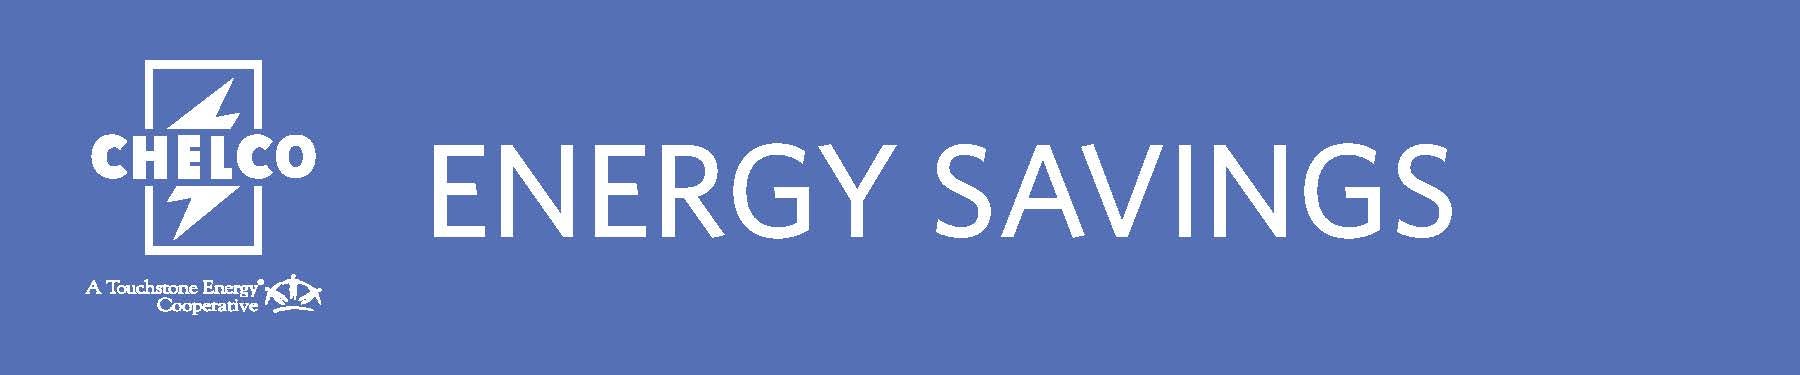 Energy Savings.jpg